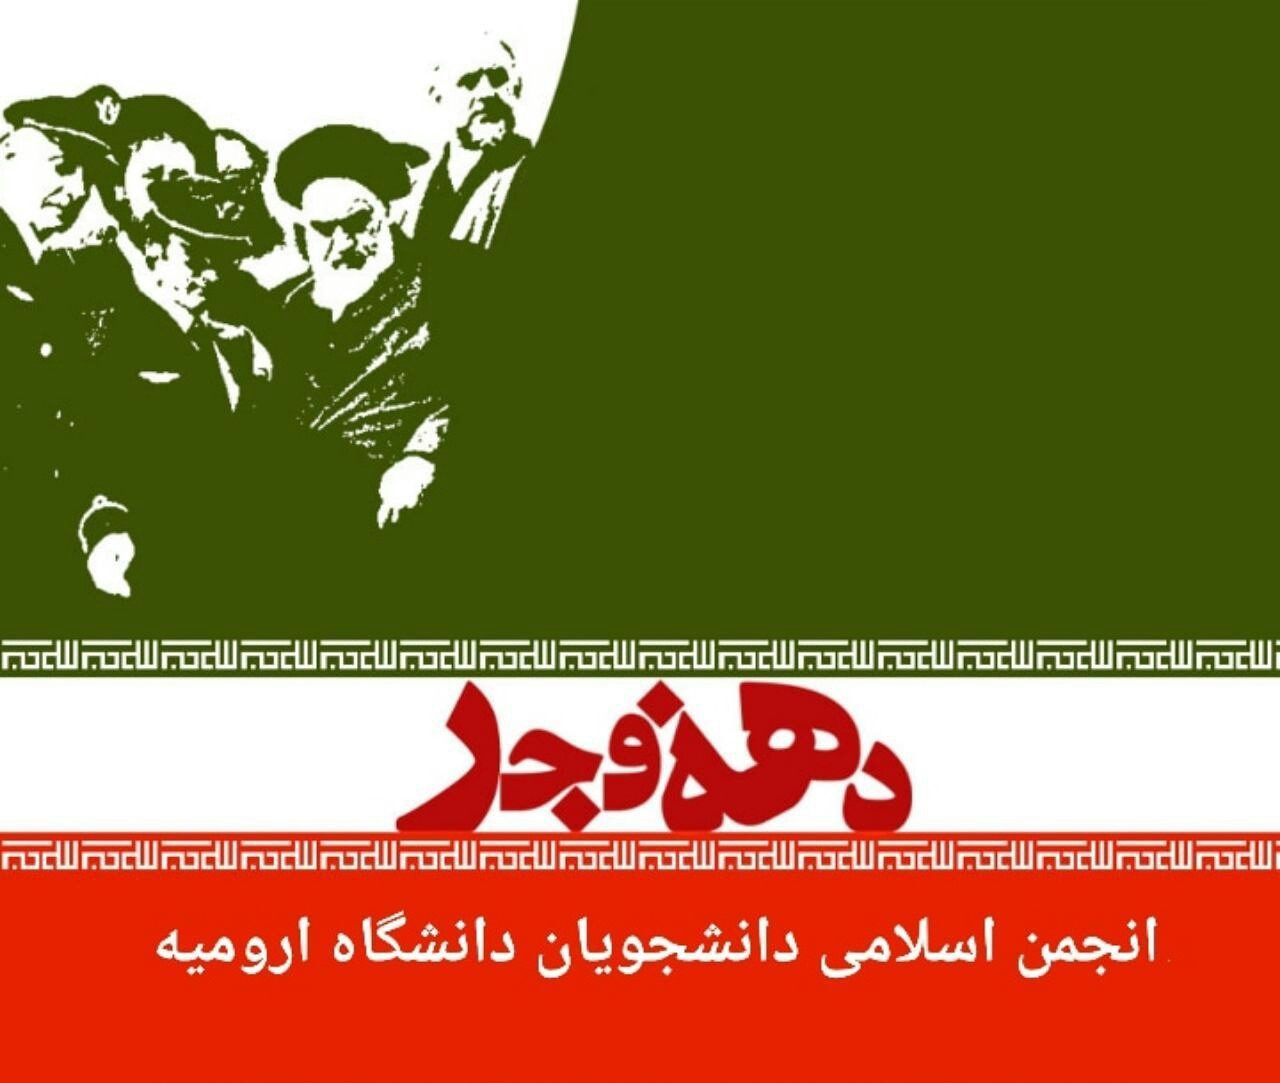 انقلاب اسلامی پایان بخش شب سیاه ظلم و جور، استبداد و وابستگی است